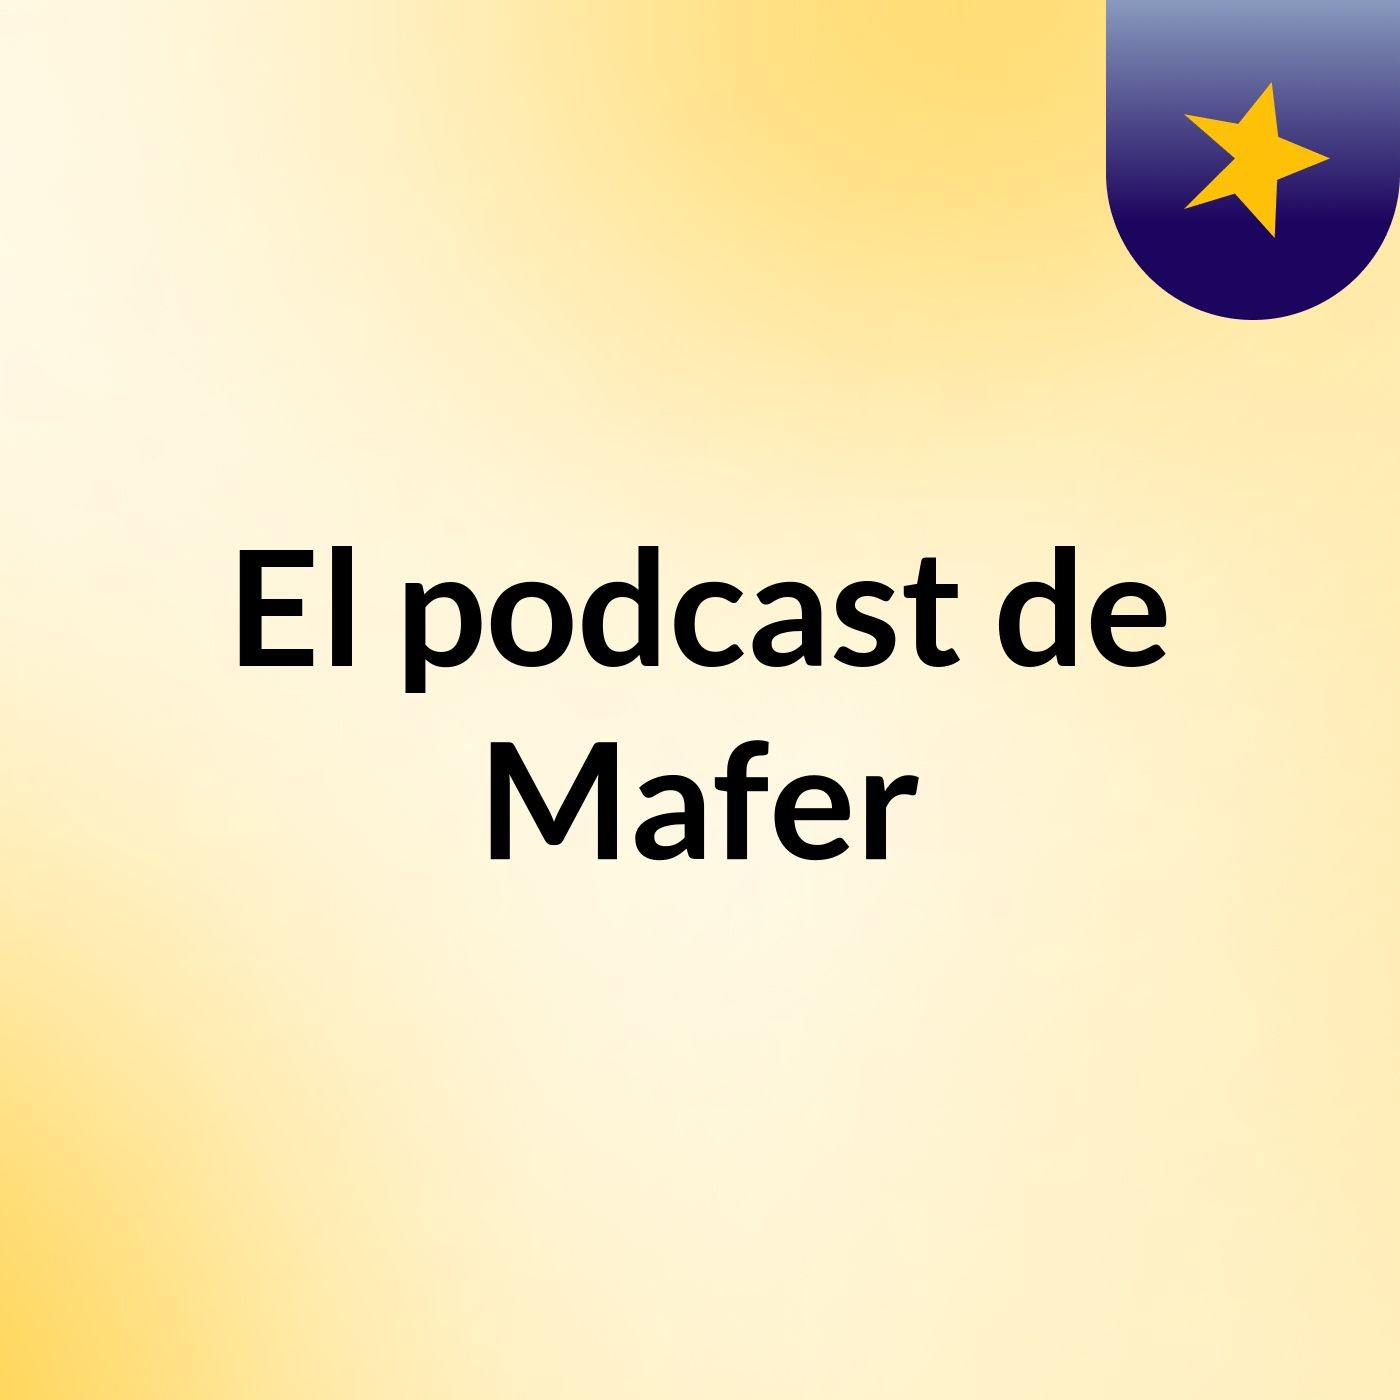 Episodio 6 - El podcast de Mafer